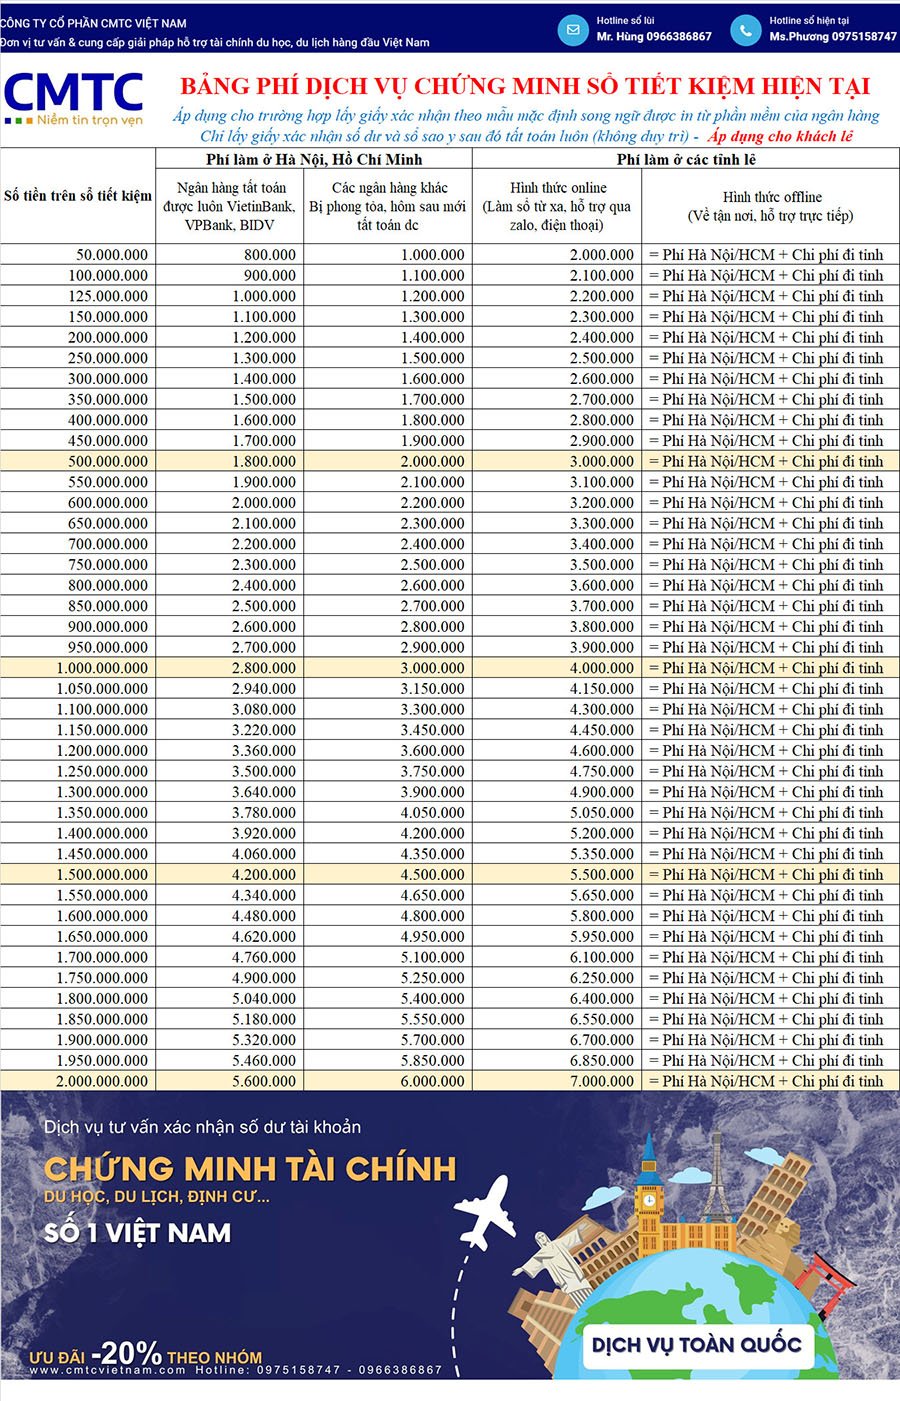 Bảng giá chứng minh tài chính Sacombank